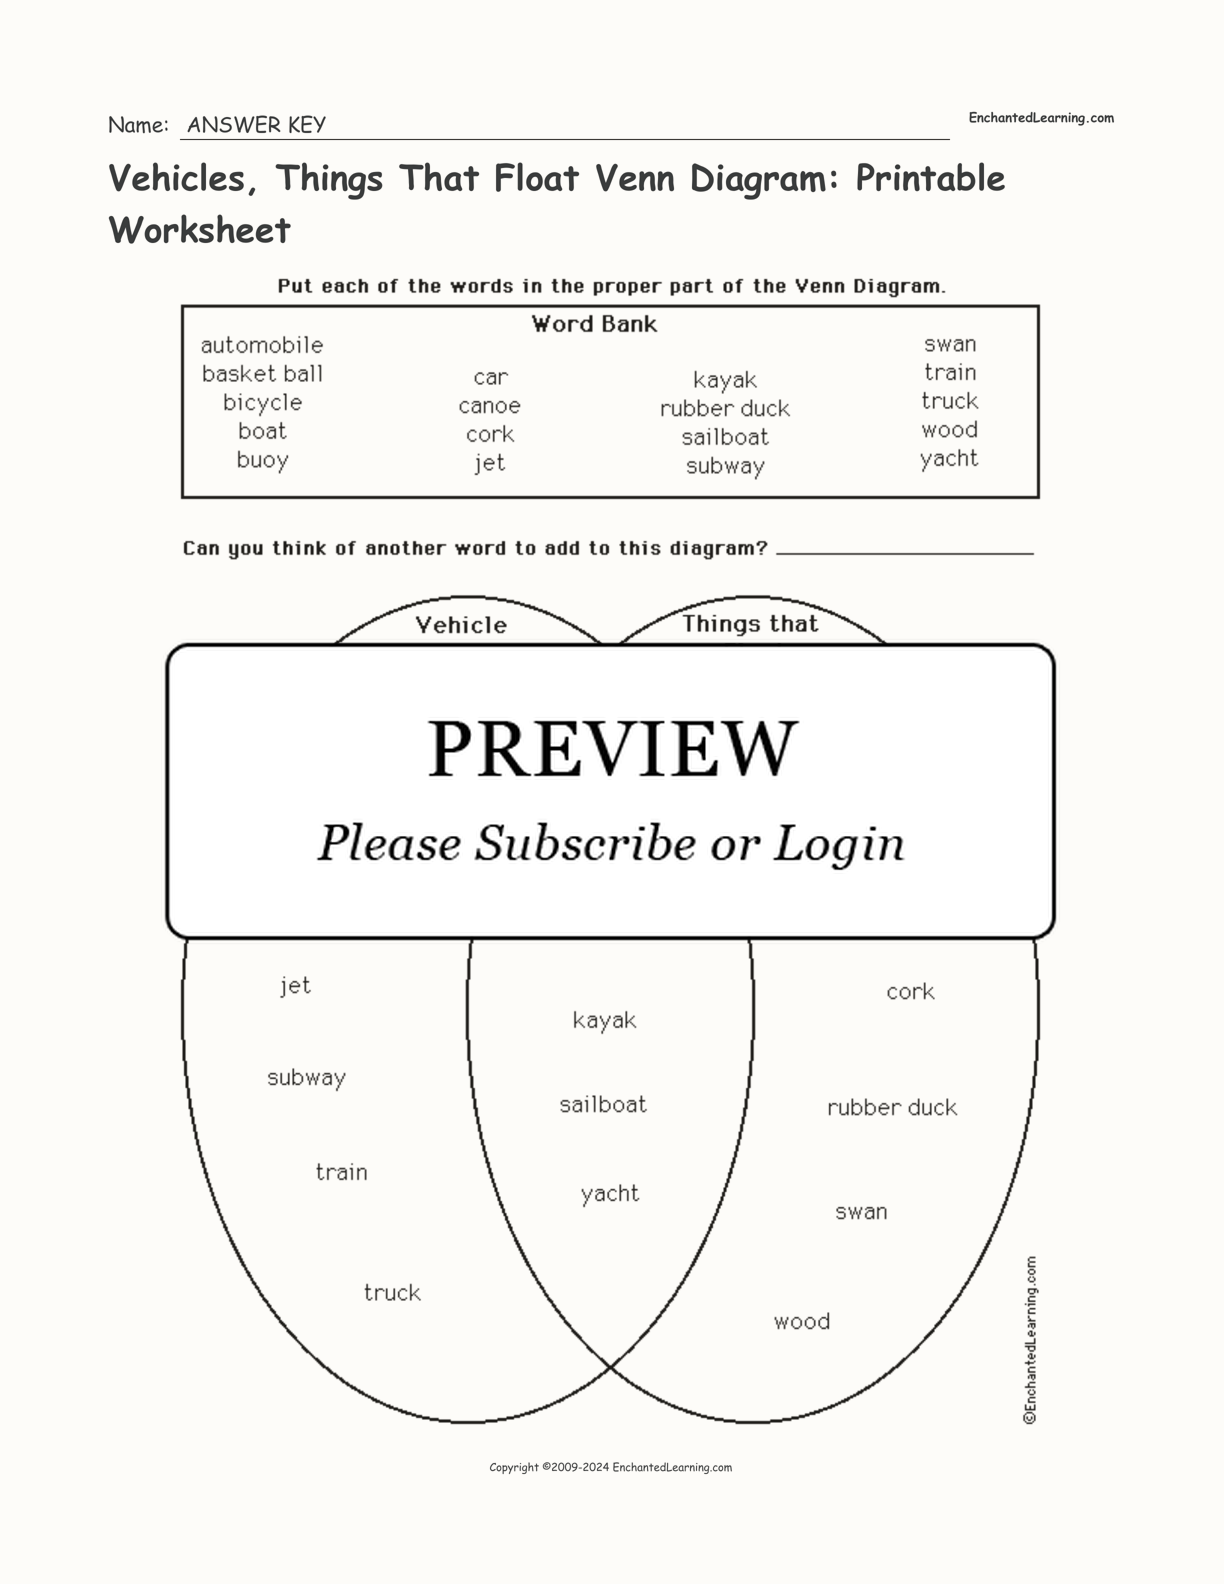 Vehicles, Things That Float Venn Diagram: Printable Worksheet interactive worksheet page 2